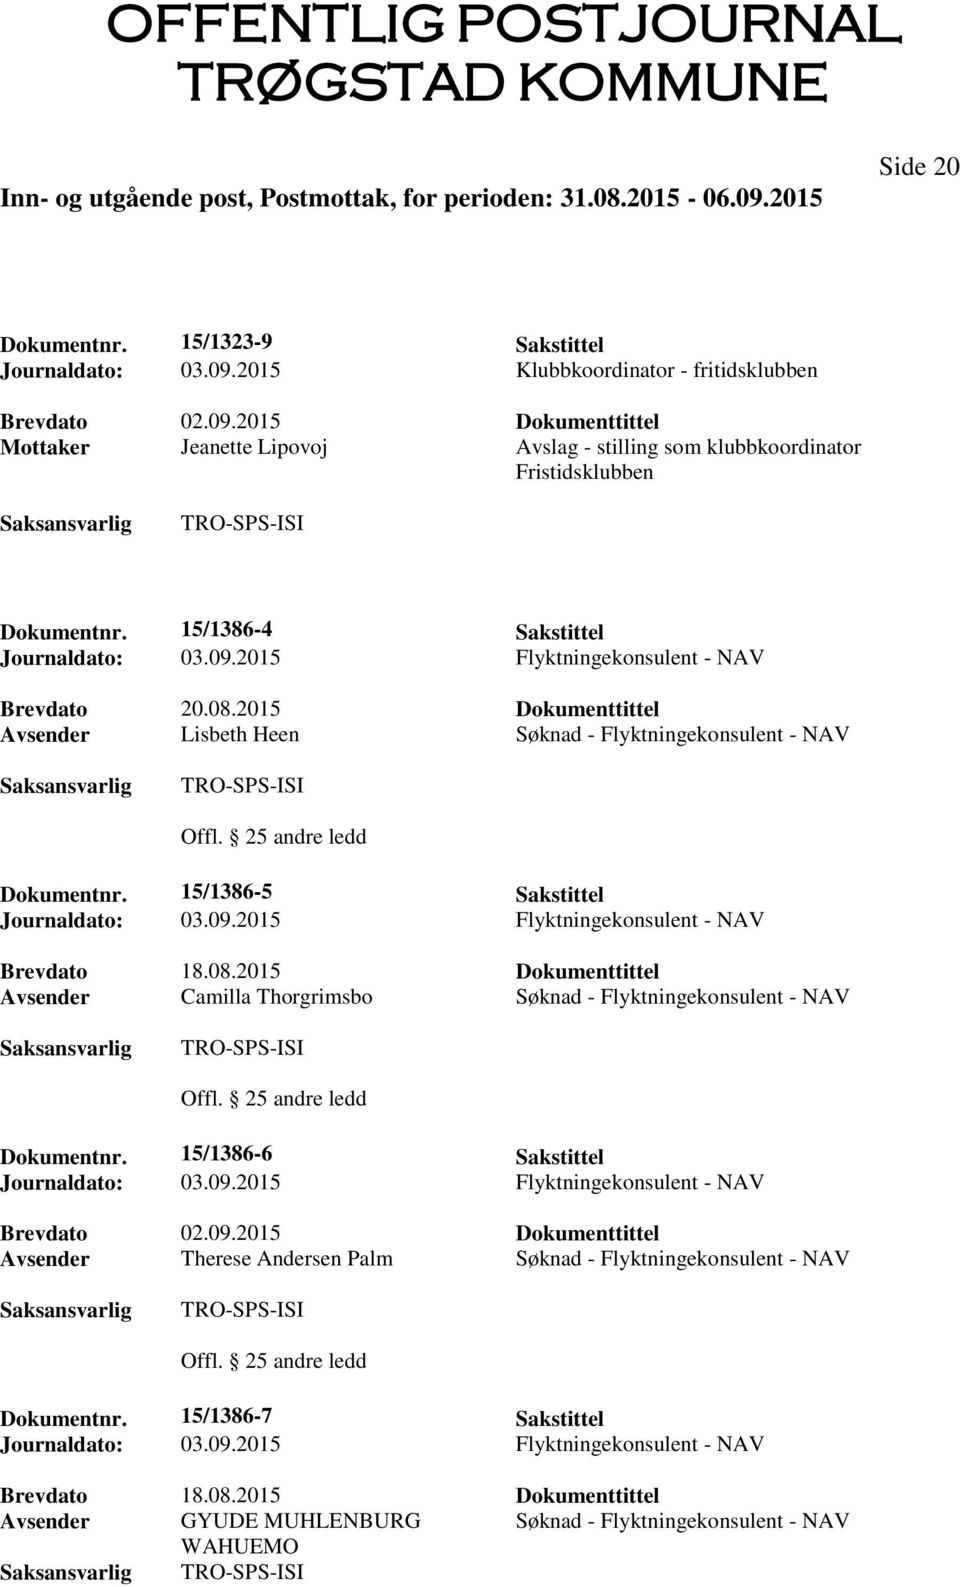 2015 Dokumenttittel Avsender Lisbeth Heen Søknad - Flyktningekonsulent - NAV Dokumentnr. 15/1386-5 Sakstittel Brevdato 18.08.